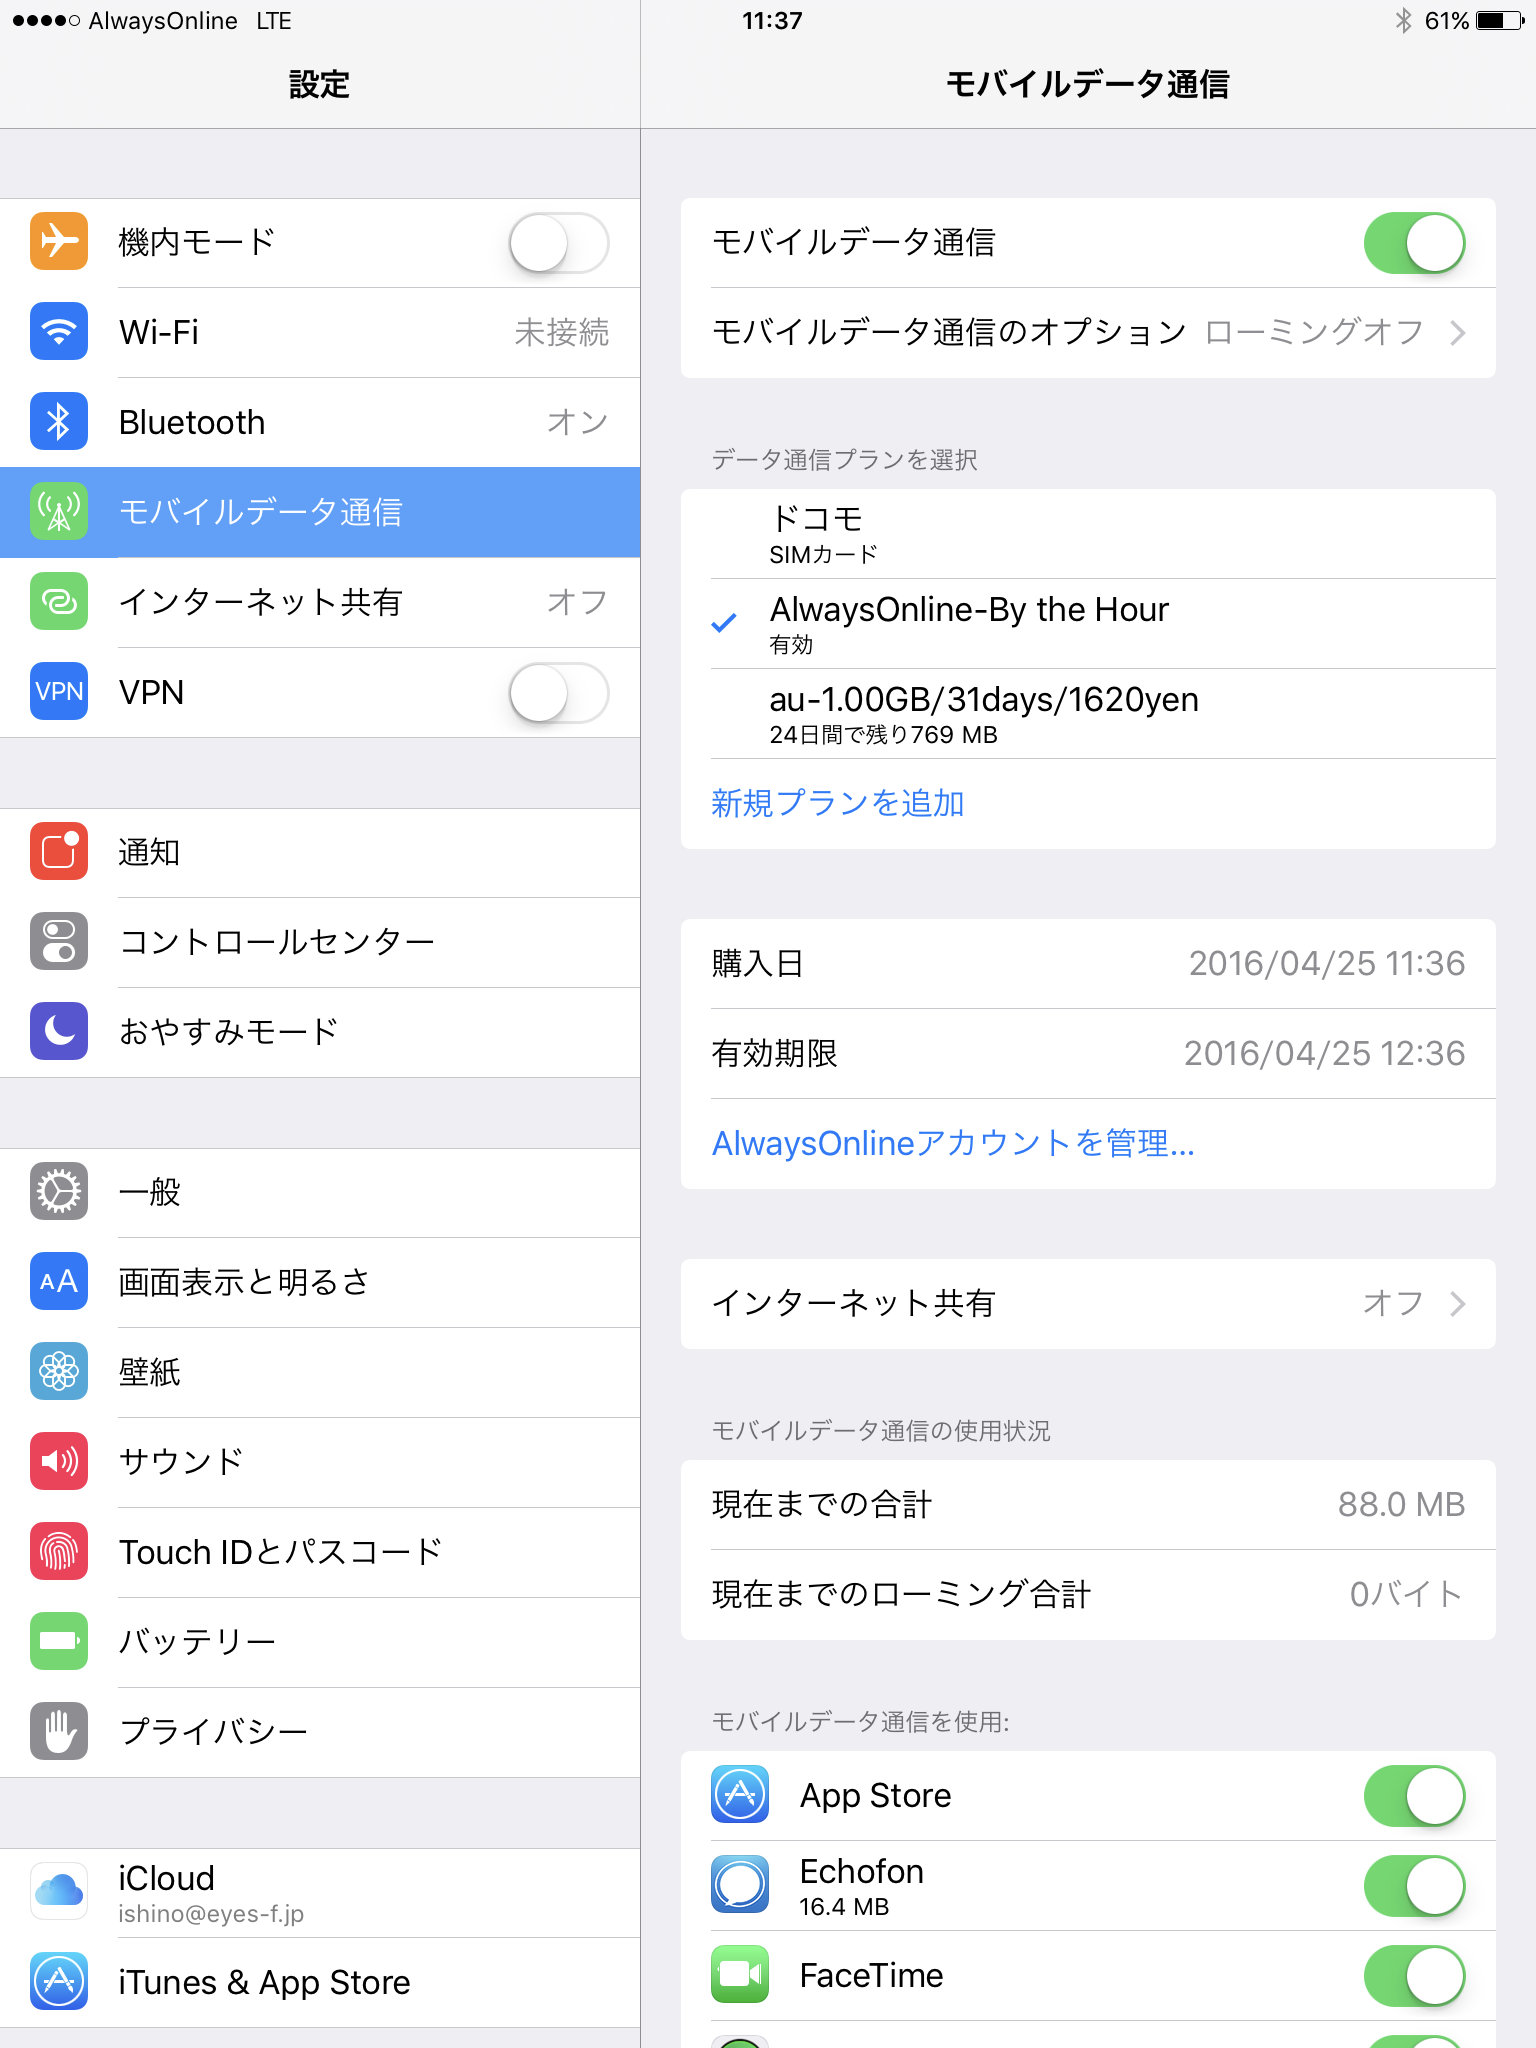 iPad Pro 9.7インチ版の内蔵Apple SIMを海外で使ってみた(週刊モバイル通信 石野純也) - Engadget 日本版